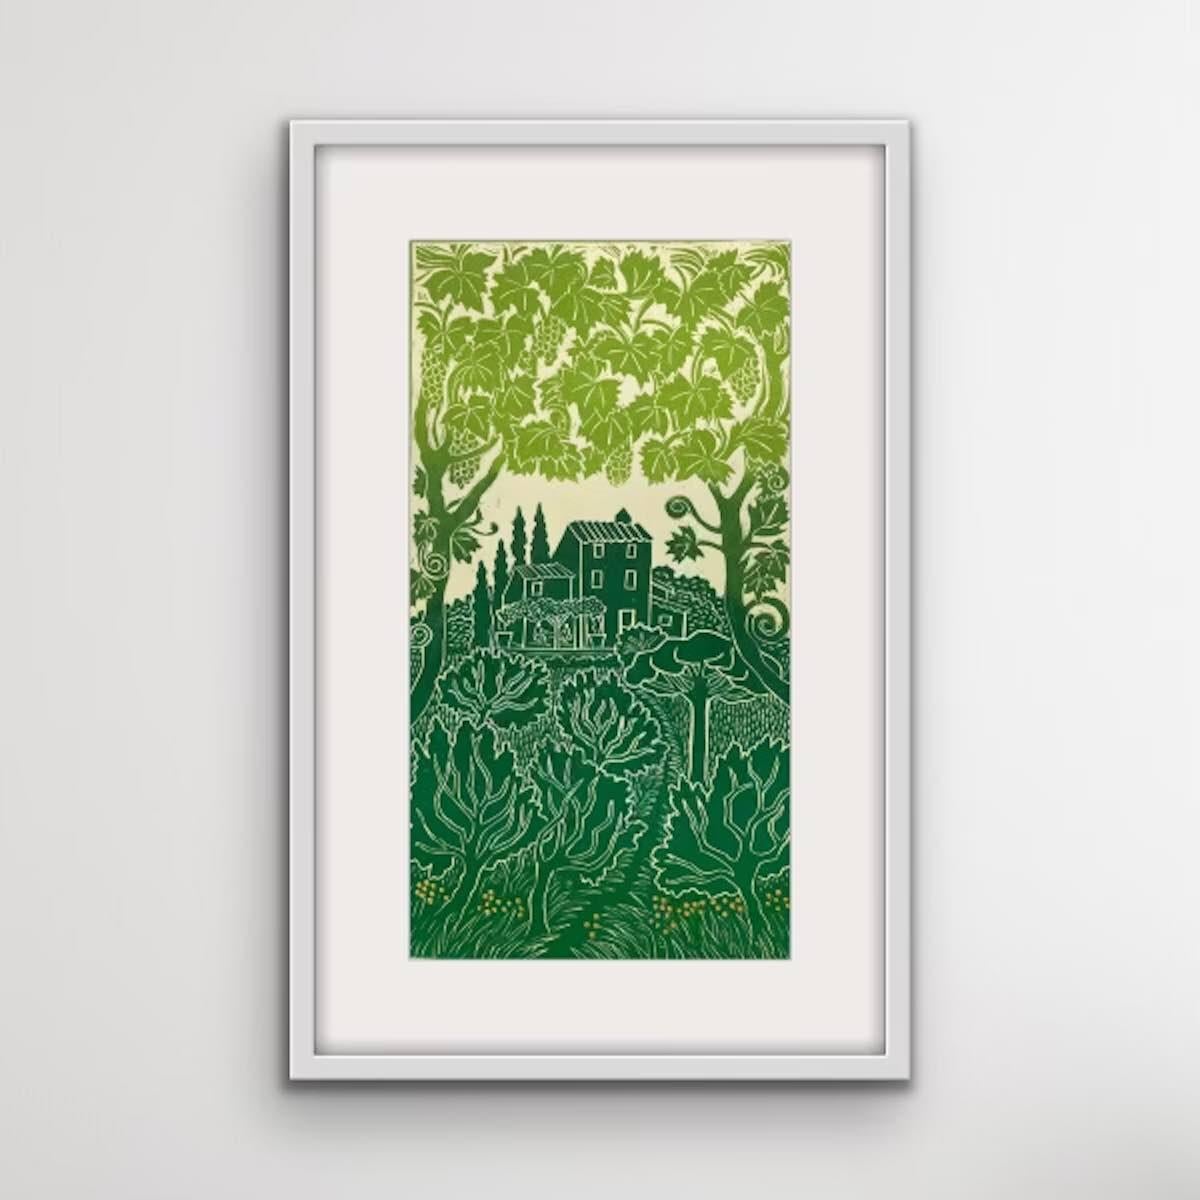 Erinnerungen an die Toskana von Elaine Marshall, Linocut, Druck in limitierter Auflage  (Grün), Landscape Print, von Elaine Marshall 